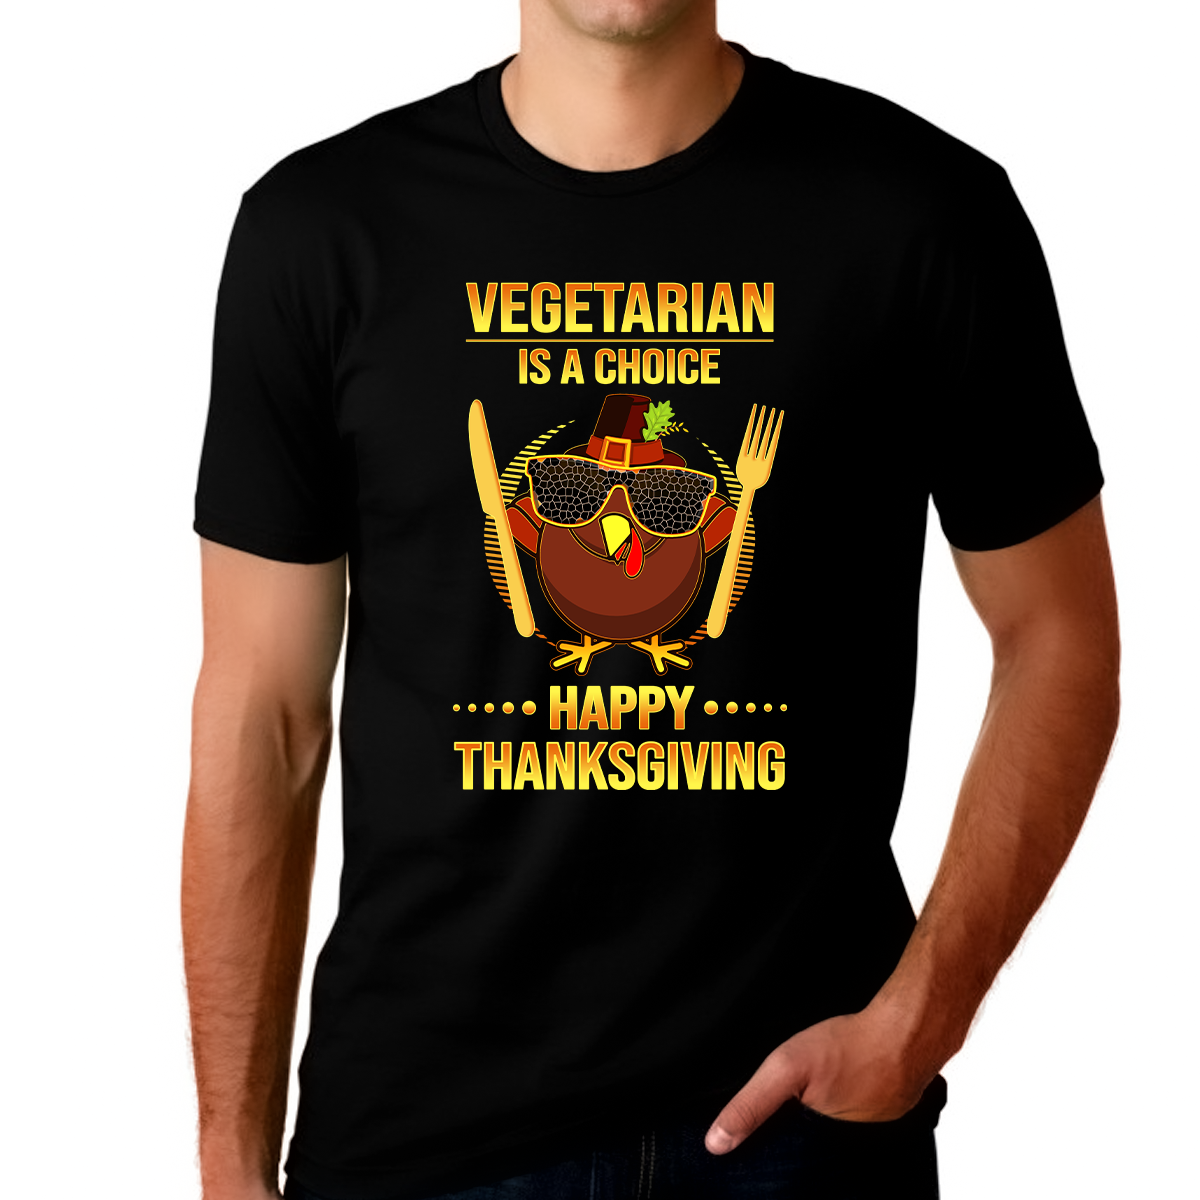 Thanksgiving Shirts for Men Vegetarian Shirt Funny Thanksgiving Shirt Funny Turkey Shirt Fall Shirts